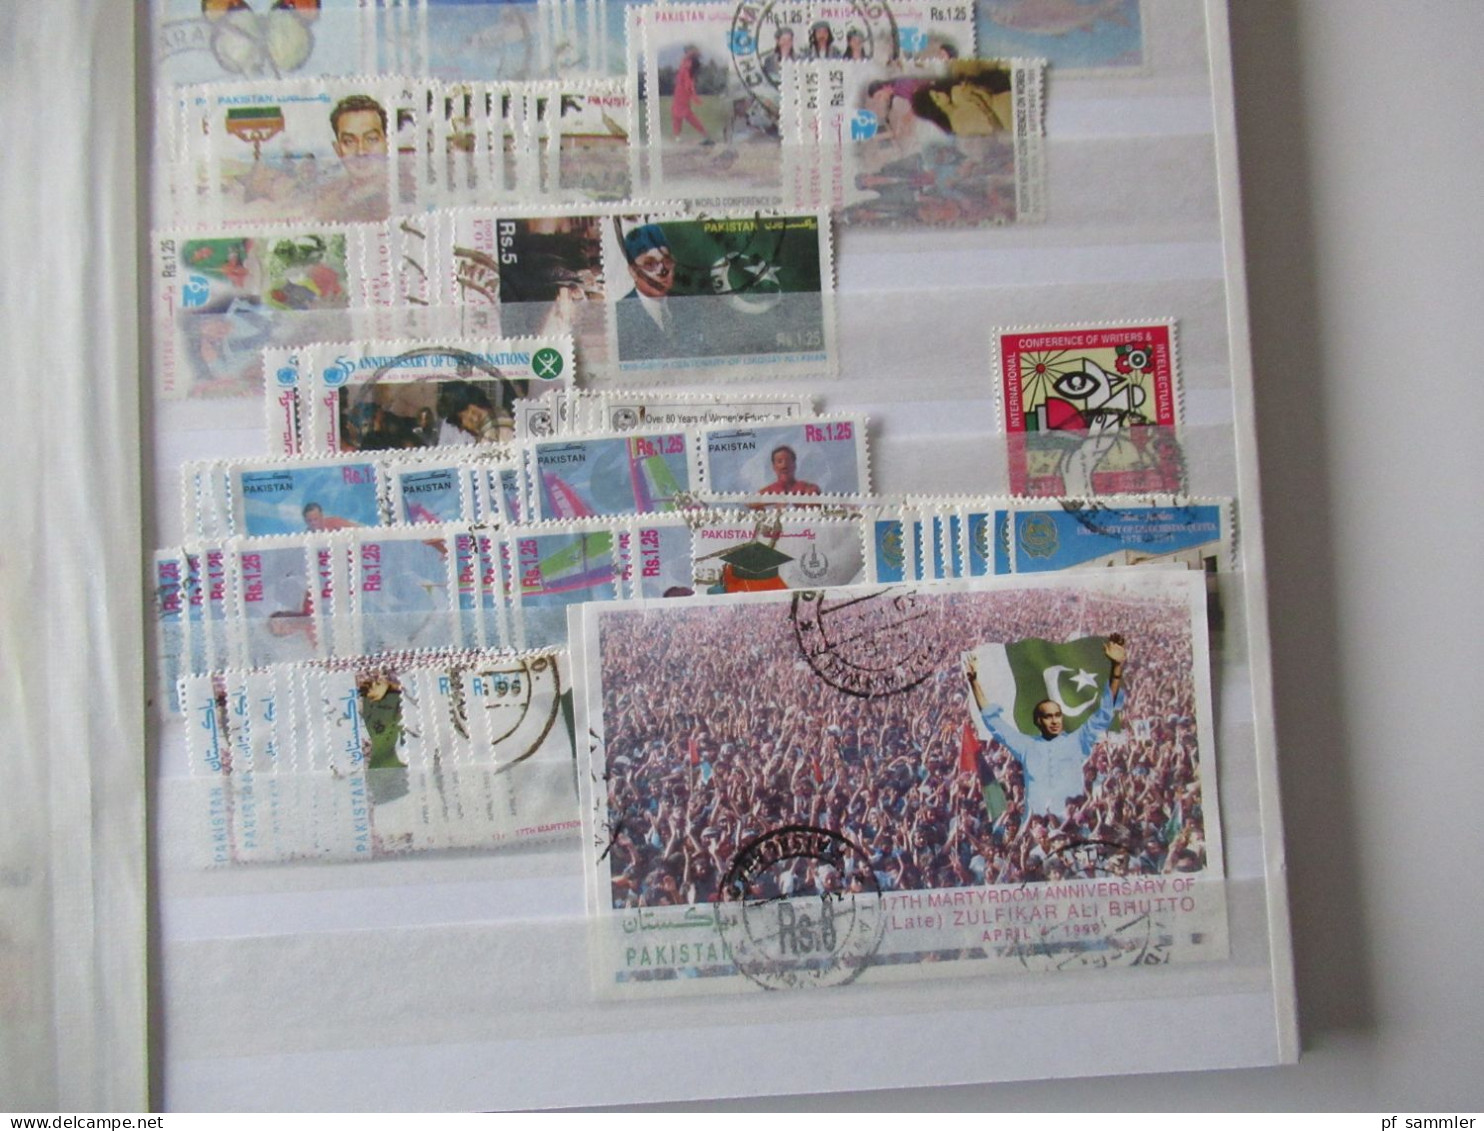 Sammlung / Lagerbuch Asien Pakistan ab India Postage mit Aufdruck - ca. 2012 viele gestempelte Marken / Fundgrube!!